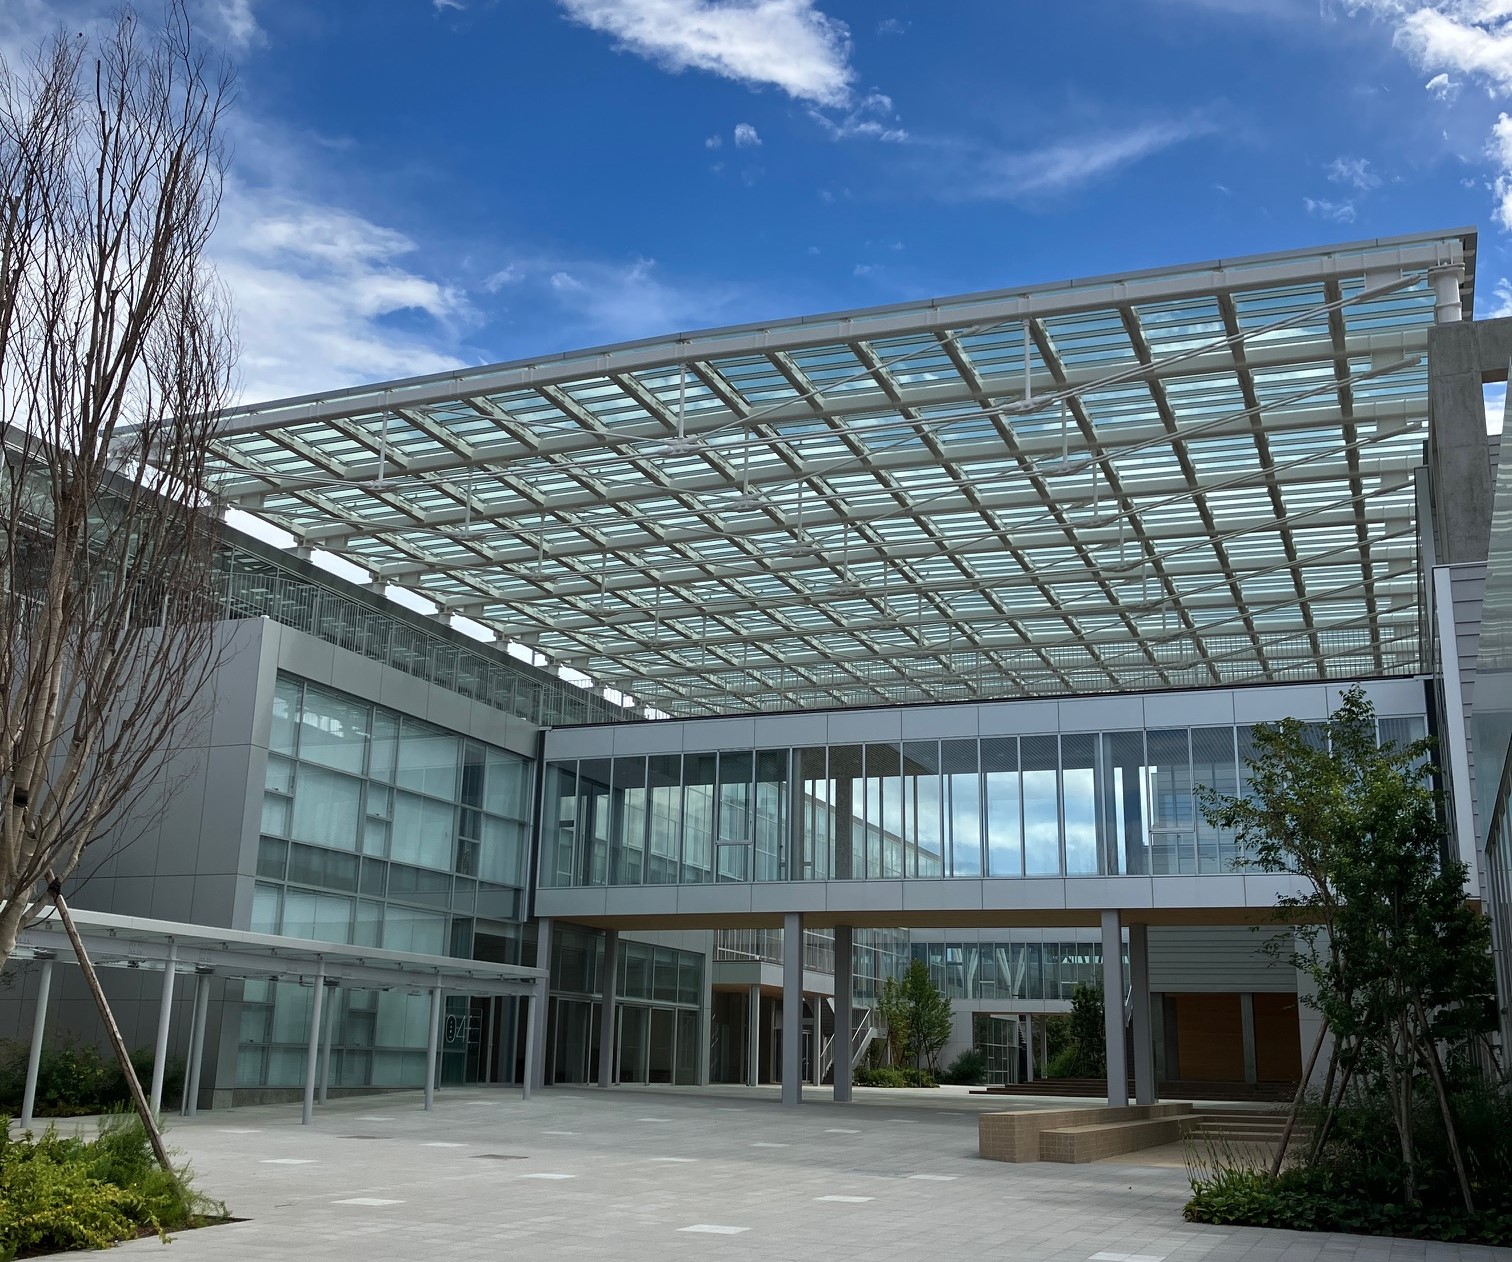 KANABIカッティング・エッジ　第10回──新キャンパスの稼働と美大の未来｜山崎剛